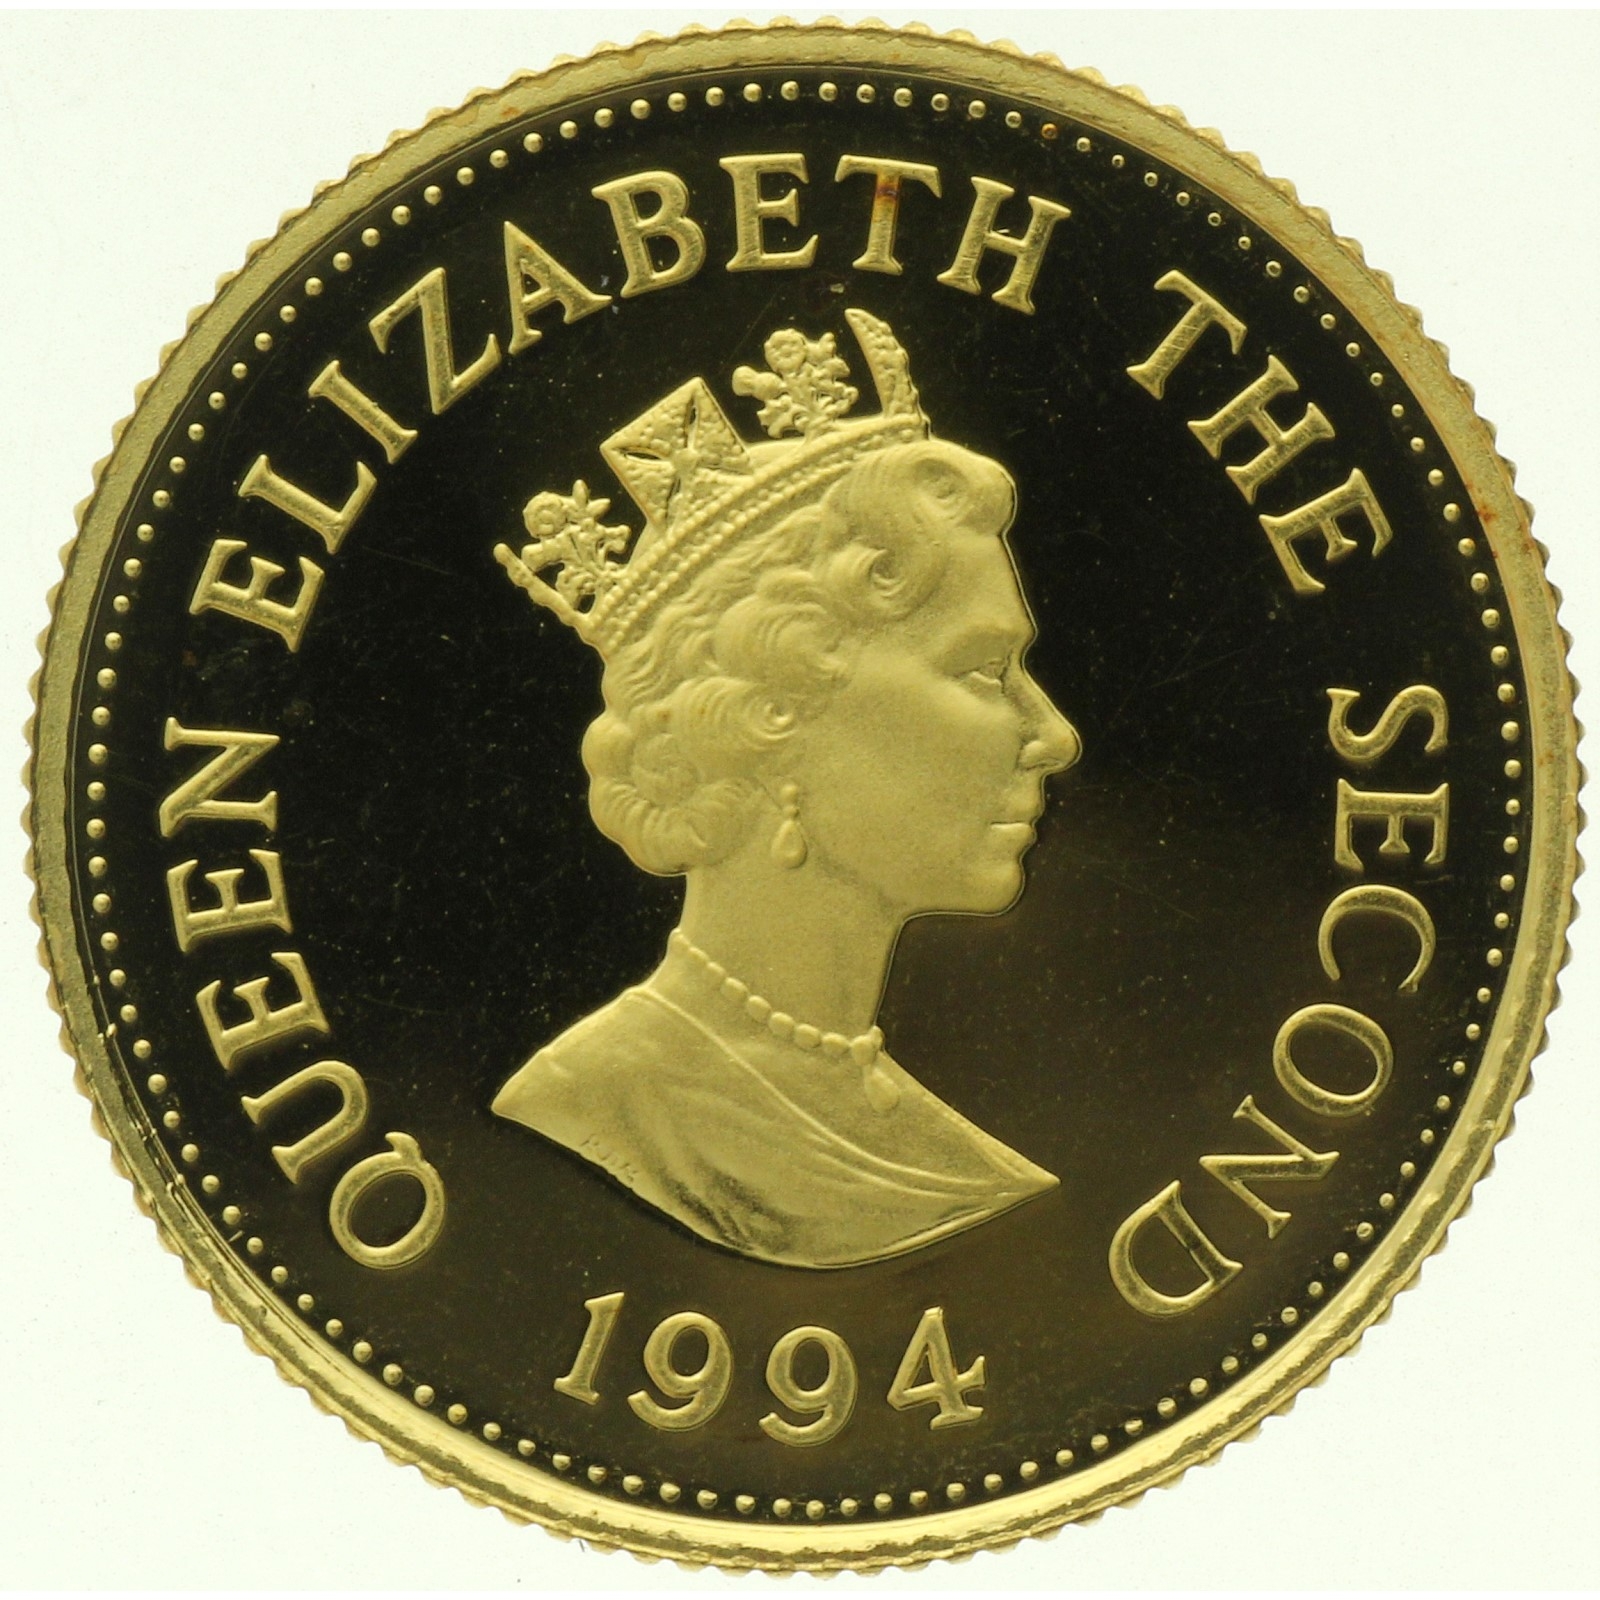 Alderney - 25 Pounds - 1994 - Elizabeth II - D-Day - 1/4oz